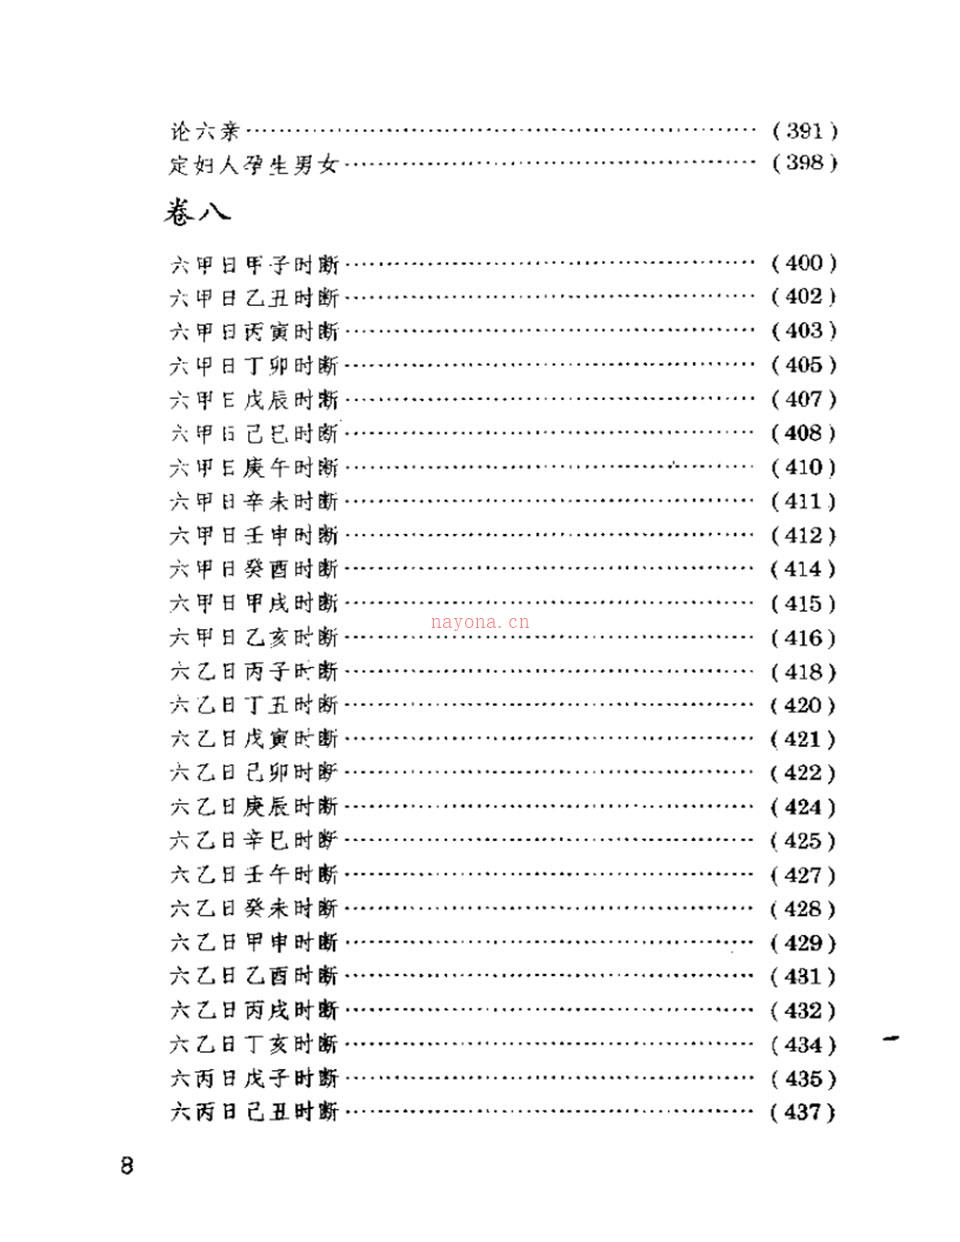 三命通会评注592页.pdf 百度网盘资源